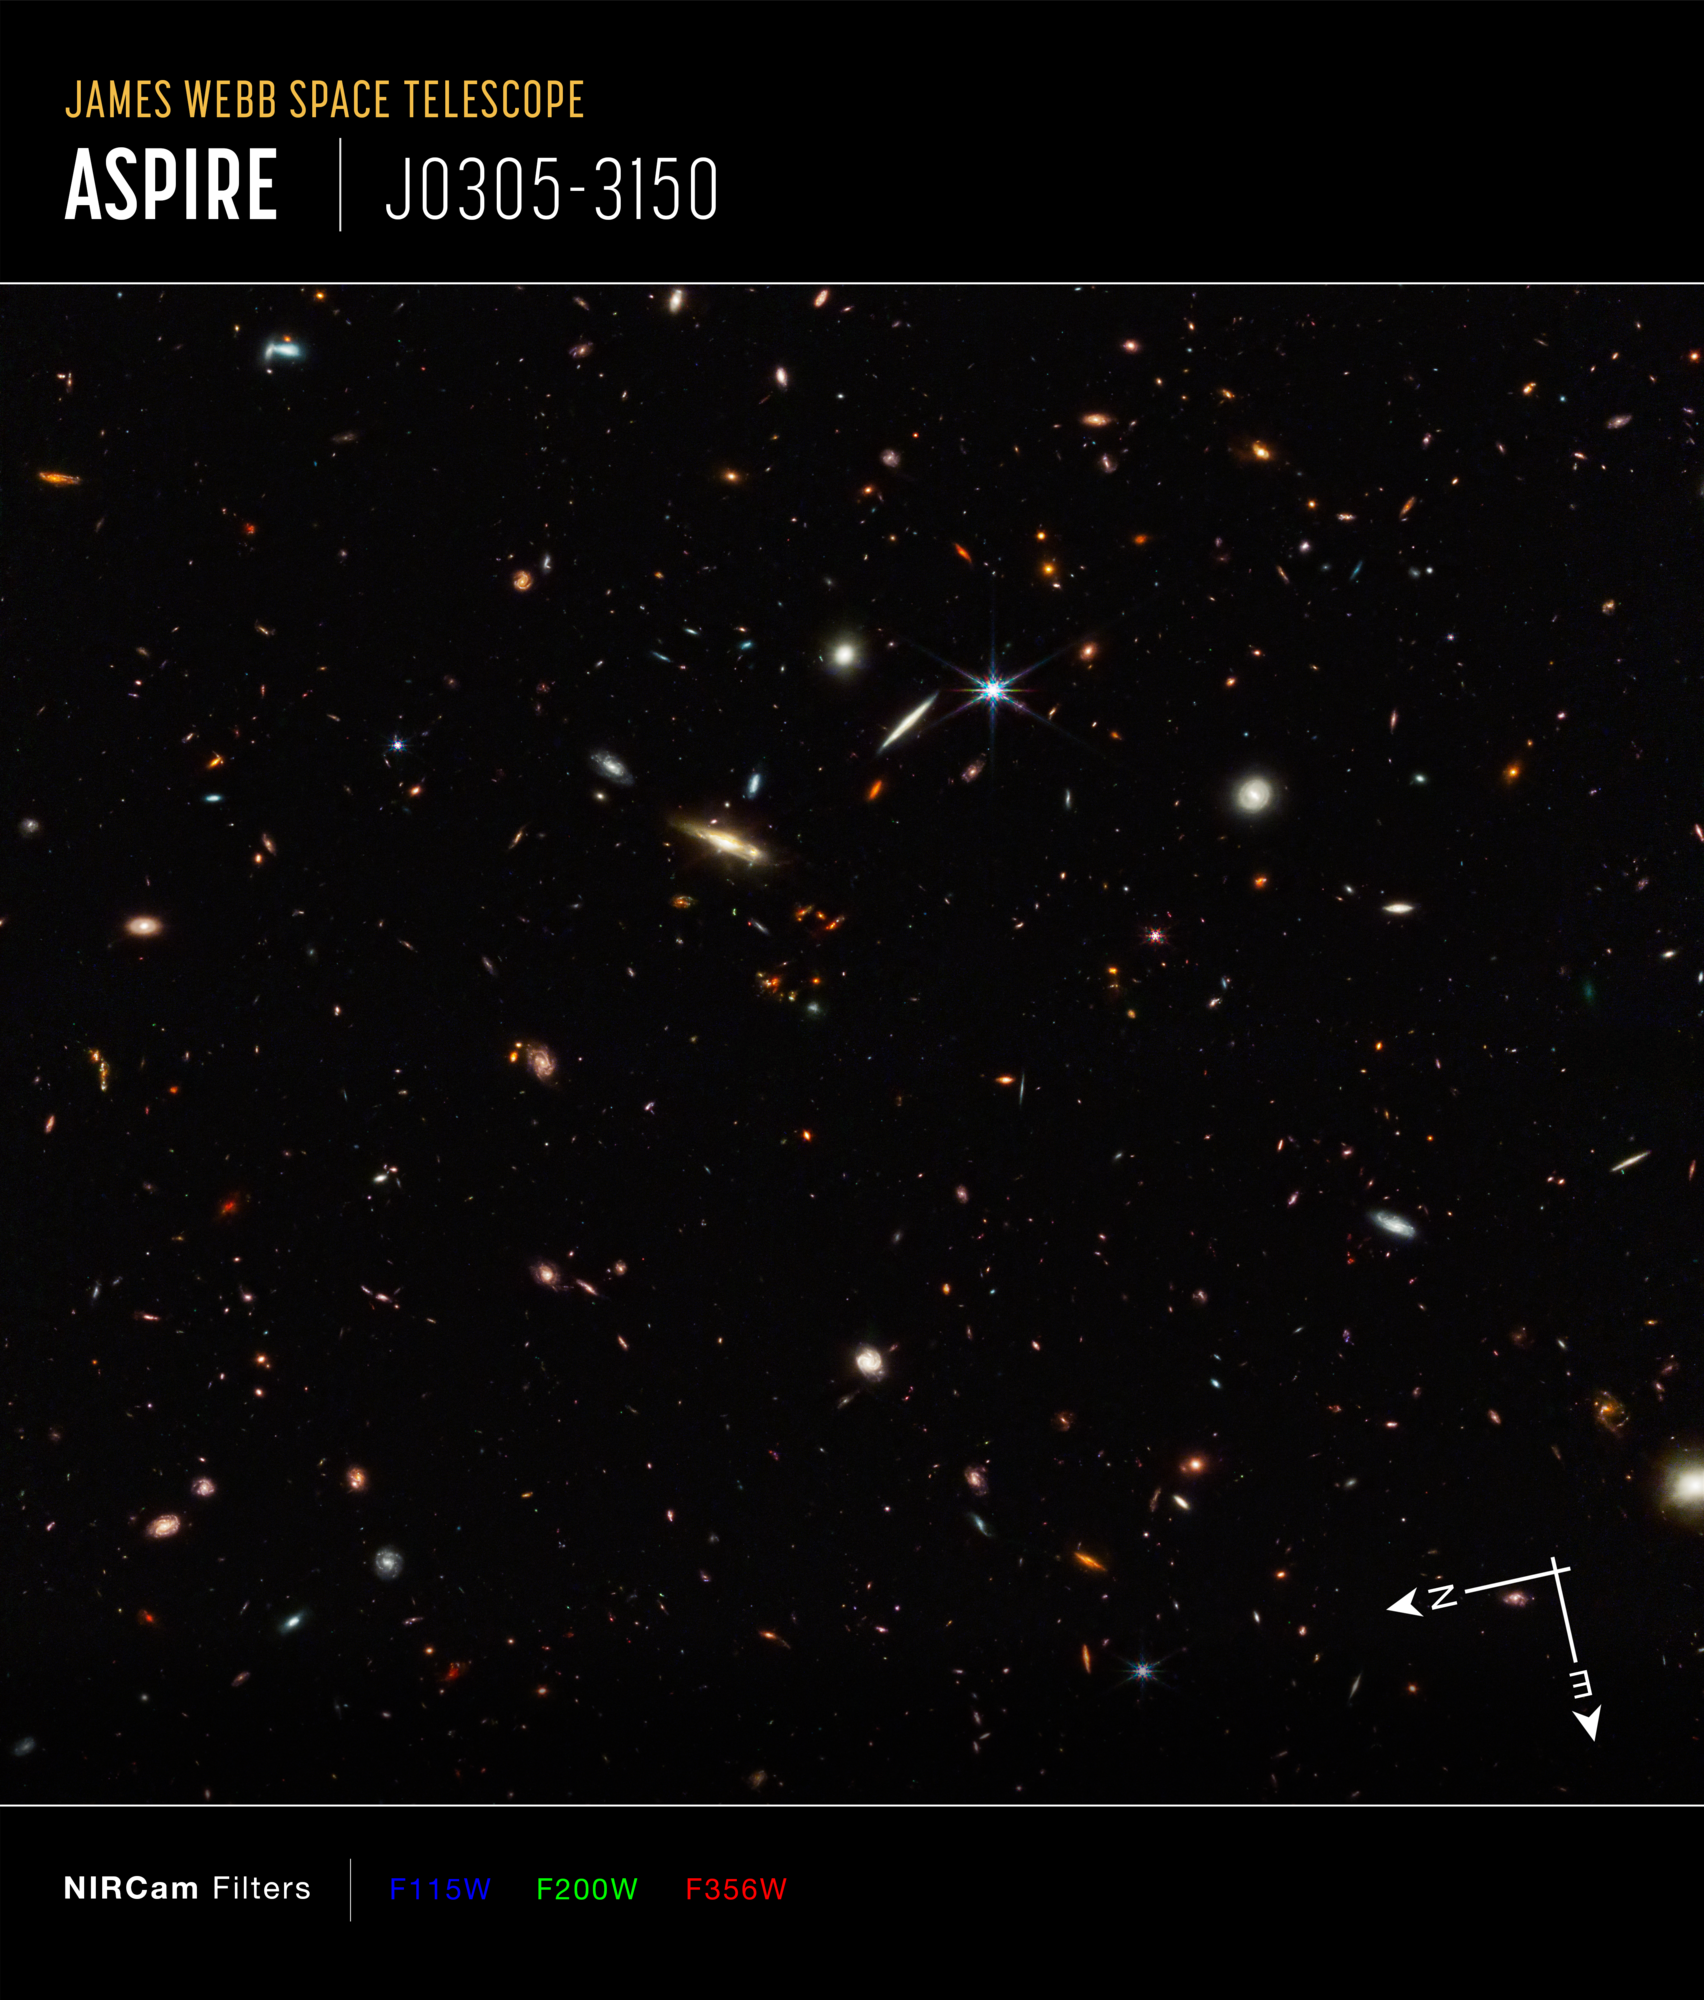 Na ilustracji: Pole pełne galaktyk z programu ASPIRE sfotografowane przez Teleskop Webba z kamerą NIRCam. Znajduje się tutaj kwazar J0305-3150 (z=6,6), którego jasność przyćmiewa galaktykę macierzystą. Na dole po prawej stronie znajdują się strzałki kompasu, pozycjonujące to zdjęcie na niebie. Poniżej zdjęcia podano nazwy filtrów użytych w kamerze NIRCam oraz mapowania kolorów przypisane do każdego filtru. Źródło: NASA, ESA, CSA, Feige Wang (University of Arizona), and Joseph DePasquale (STScI)